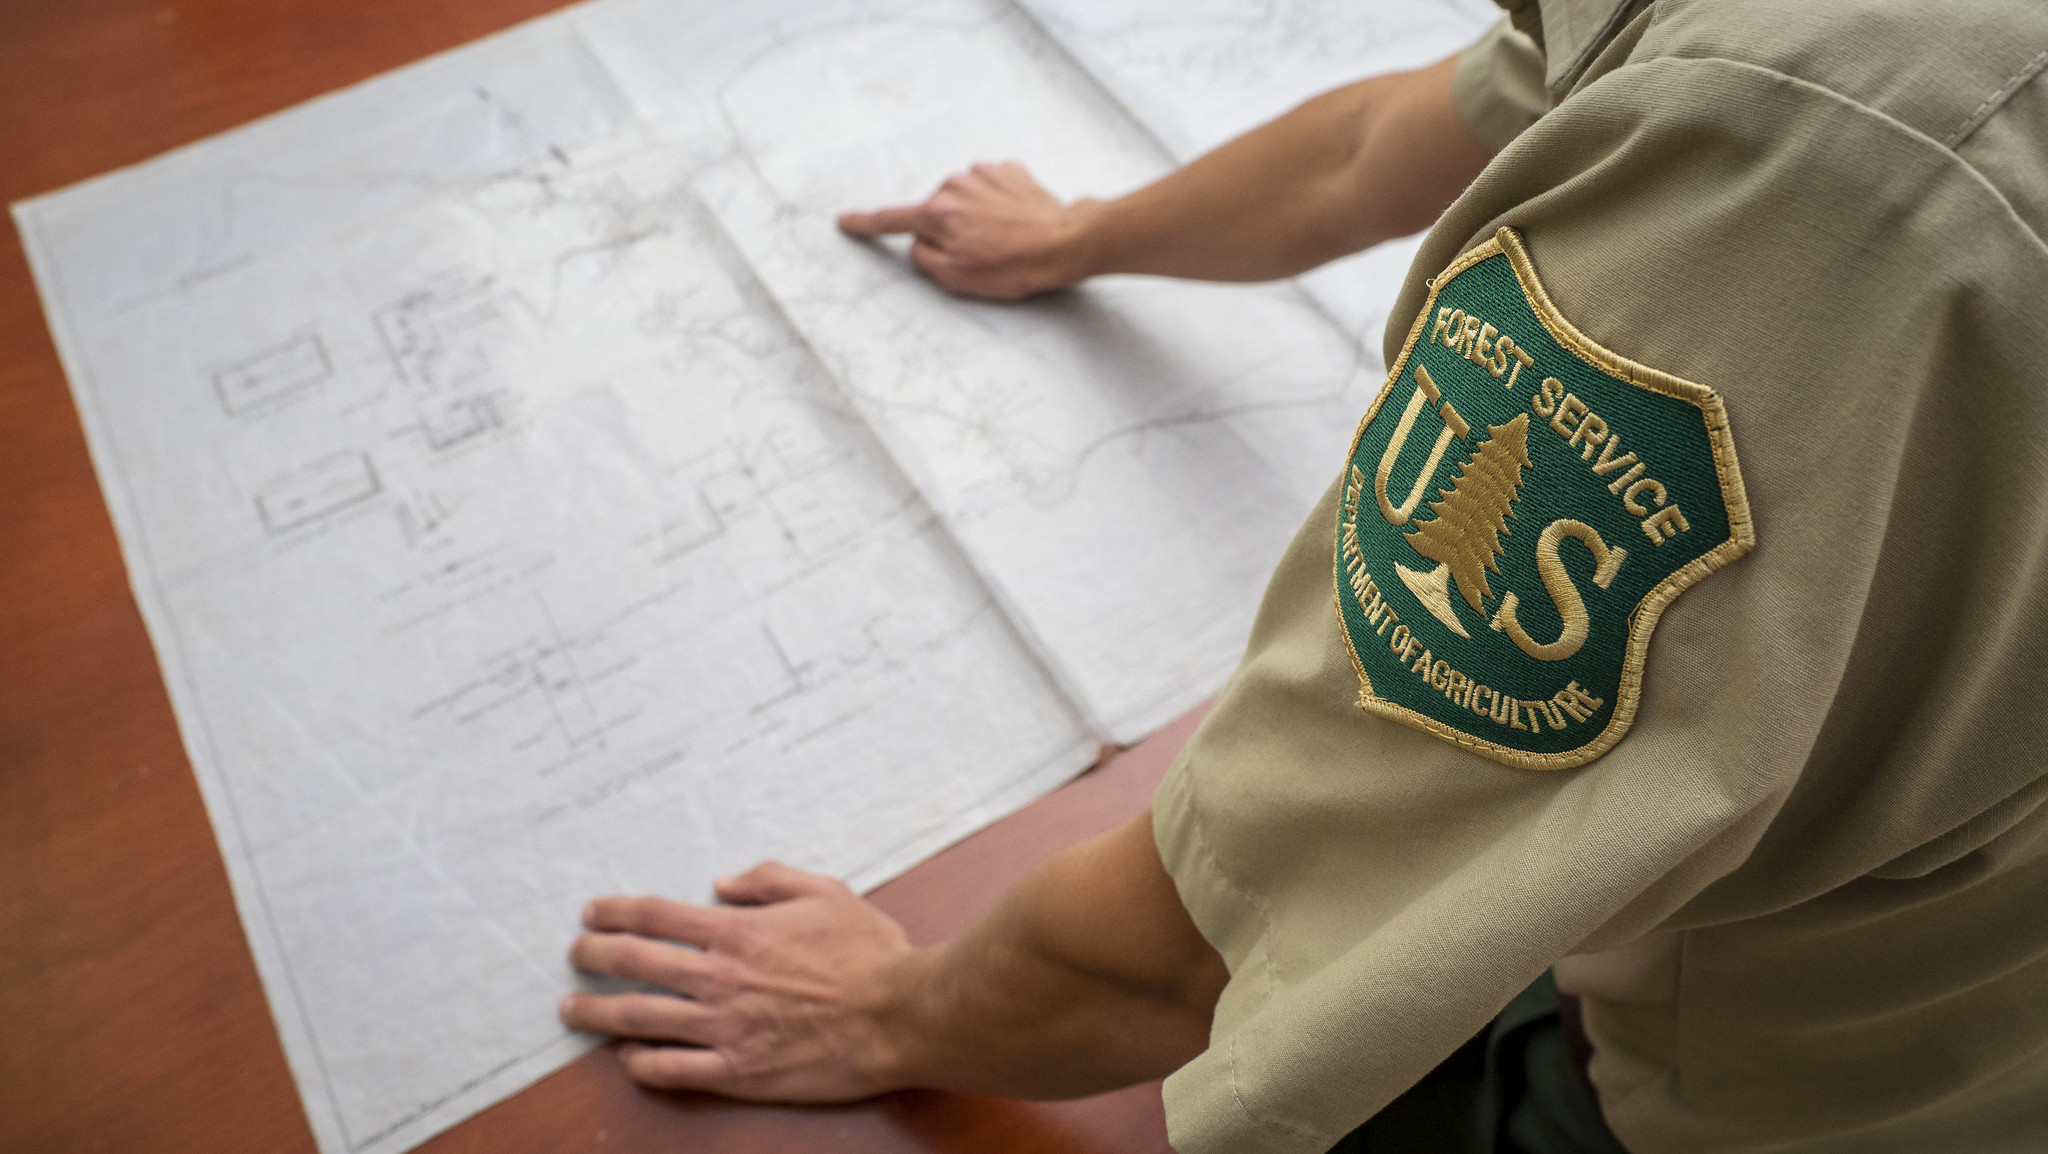 An employee in uniform reviews a blueprint.